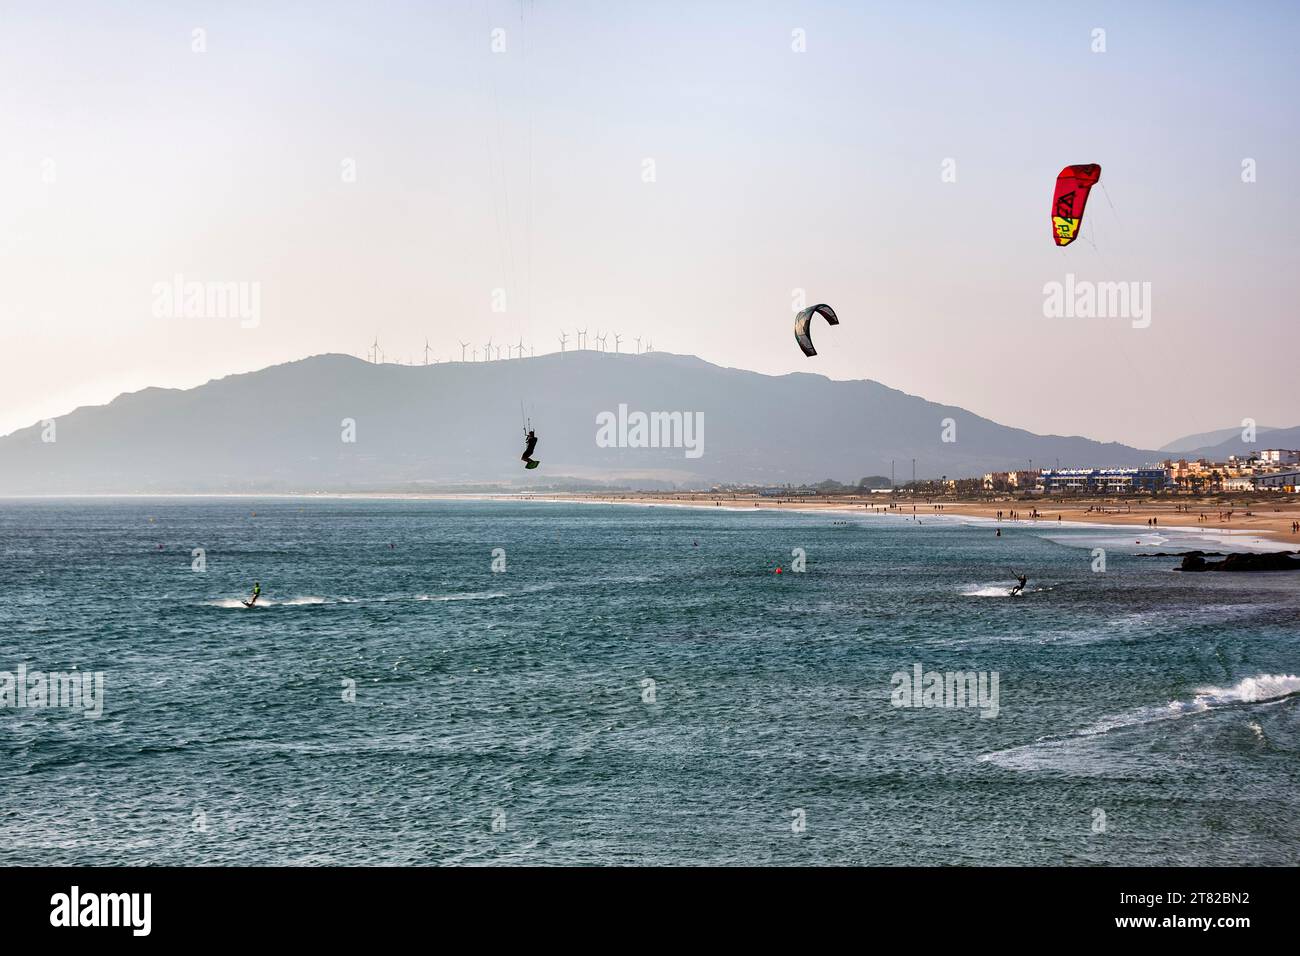 Kitesurfers profitant du vent, côte, Tarifa, Playa de Los lances, détroit de Gibraltar, Costa de la Luz, Andalousie, Espagne Banque D'Images